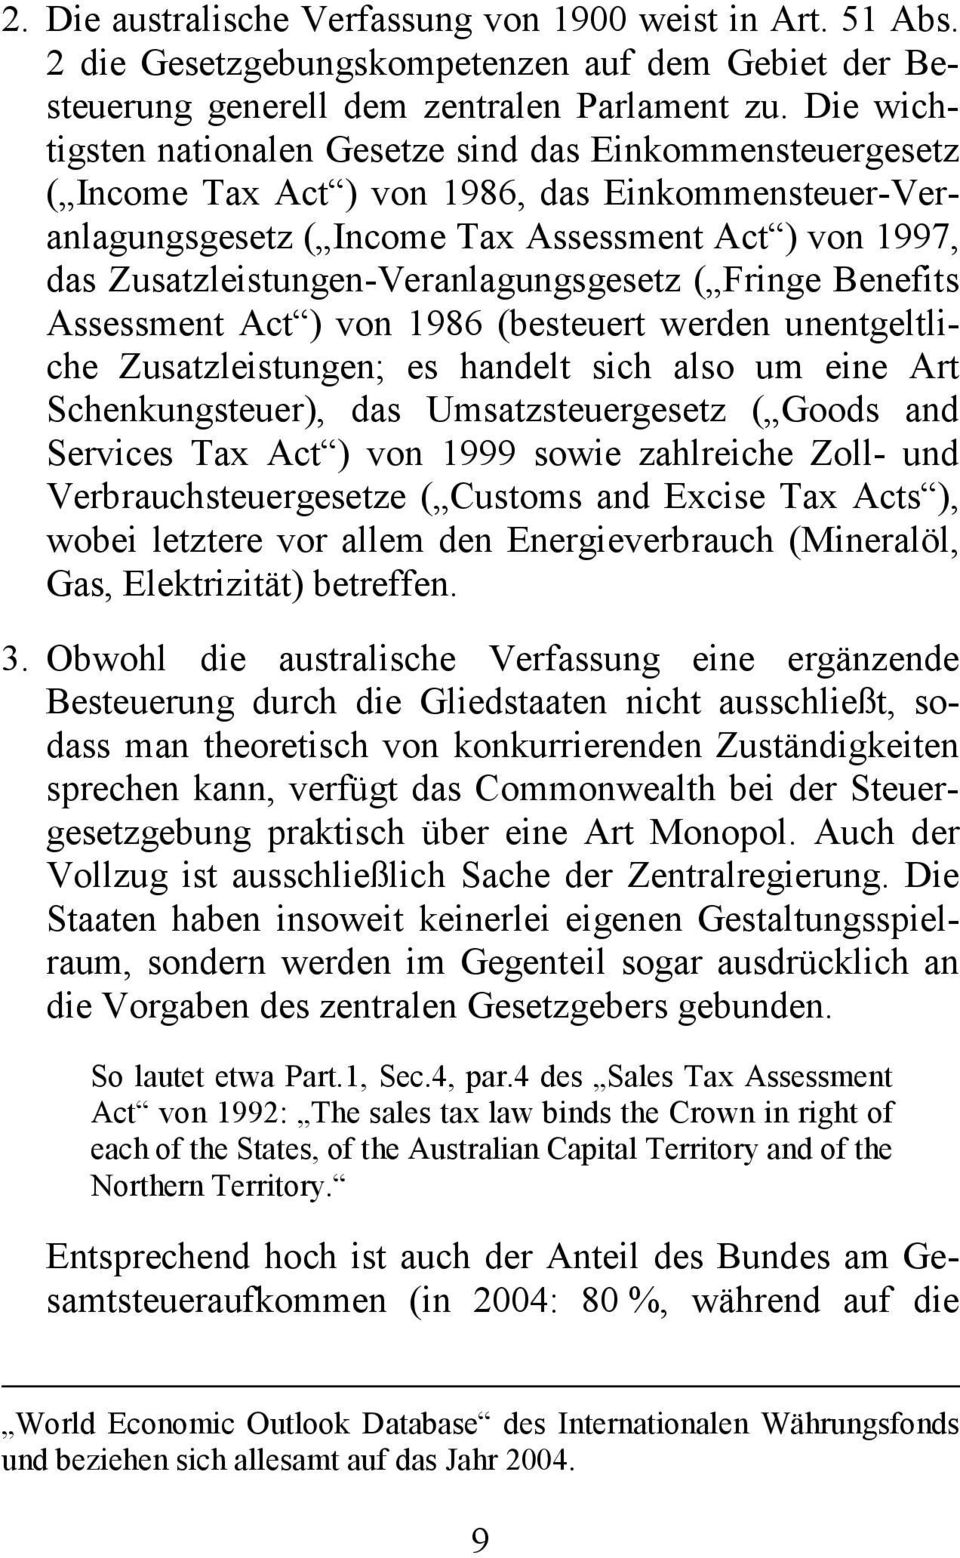 Zusatzleistungen-Veranlagungsgesetz ( Fringe Benefits Assessment Act ) von 1986 (besteuert werden unentgeltliche Zusatzleistungen; es handelt sich also um eine Art Schenkungsteuer), das